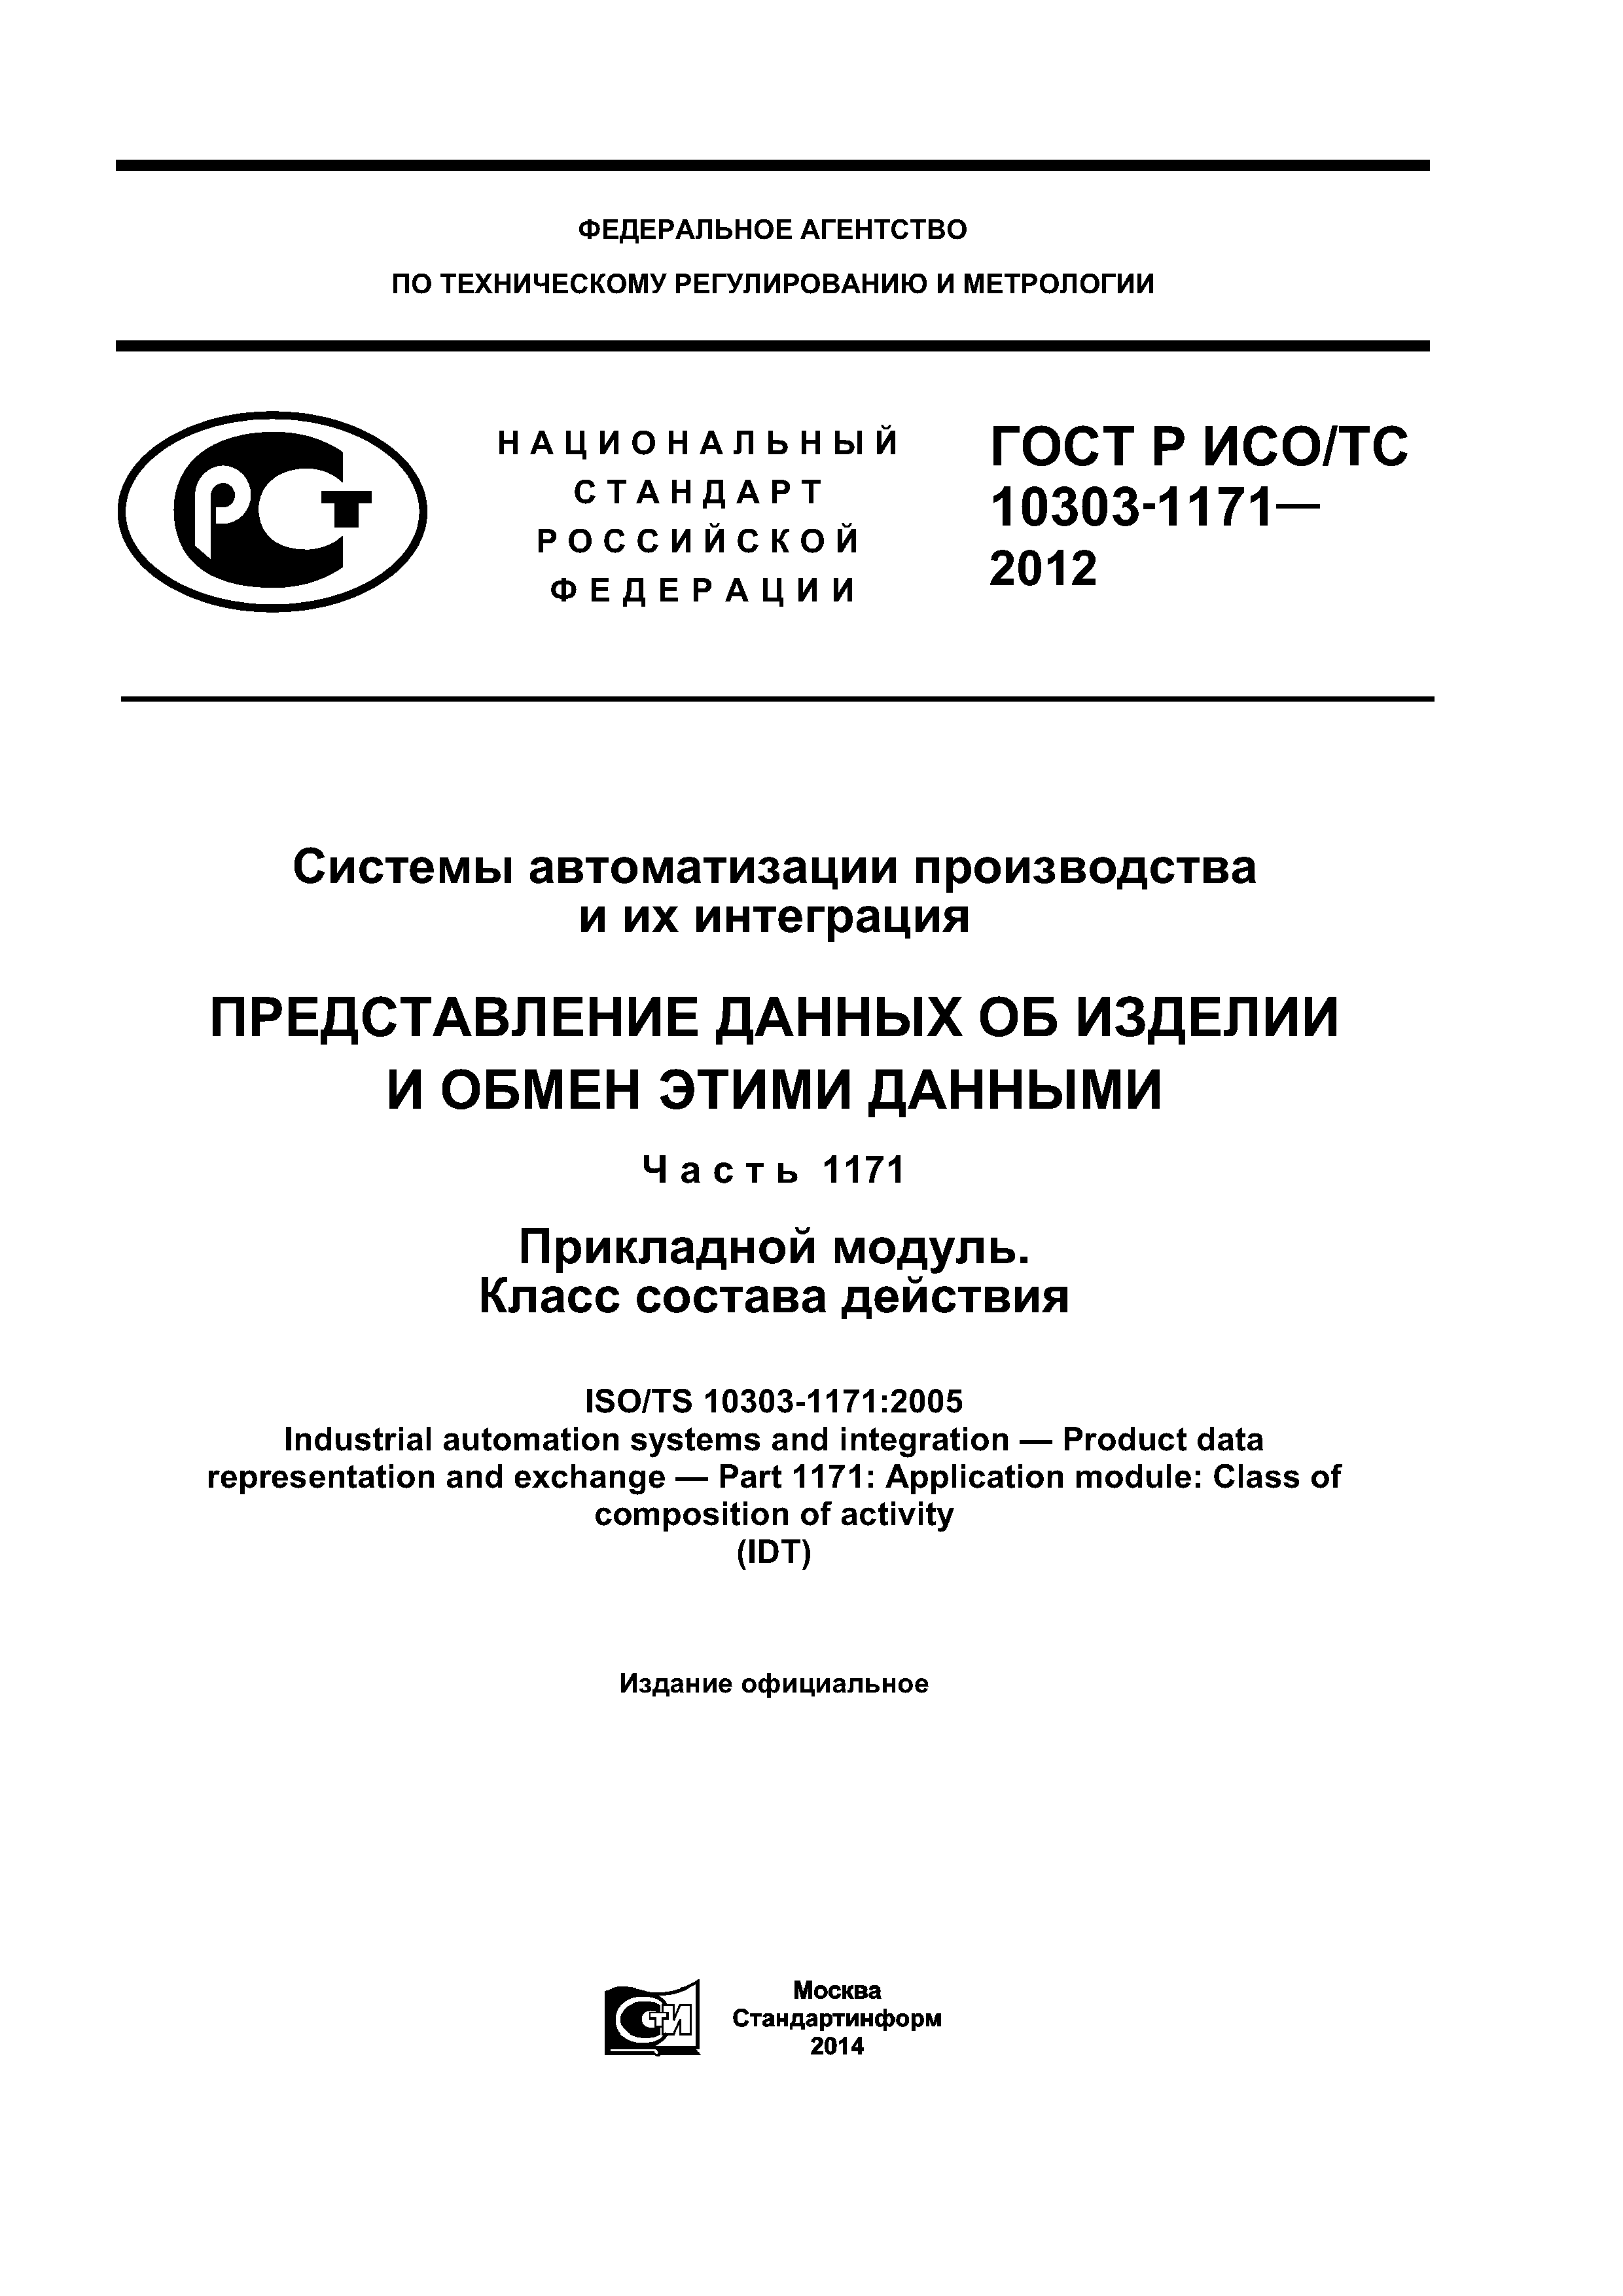 ГОСТ Р ИСО/ТС 10303-1171-2012